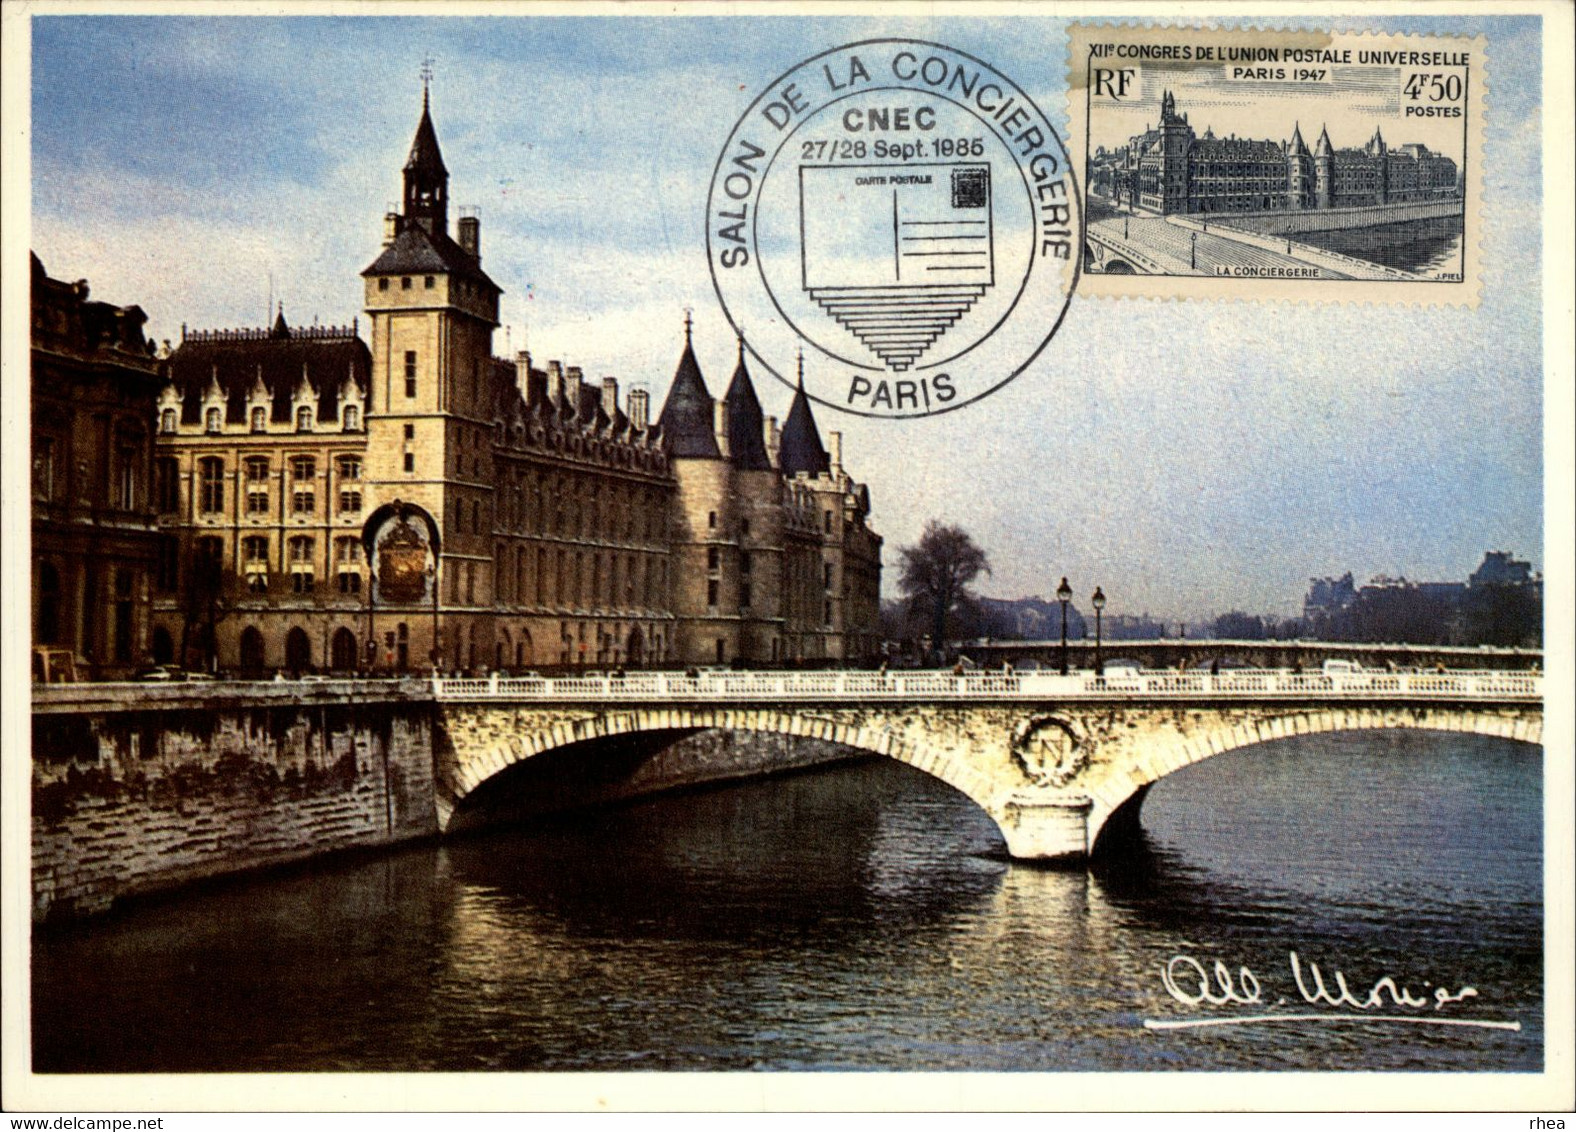 SALONS DE COLLECTIONS - Salon De La Conciergerie - Salon De Cartes Postales - Paris - Photo De Monier - 1985 - Bourses & Salons De Collections